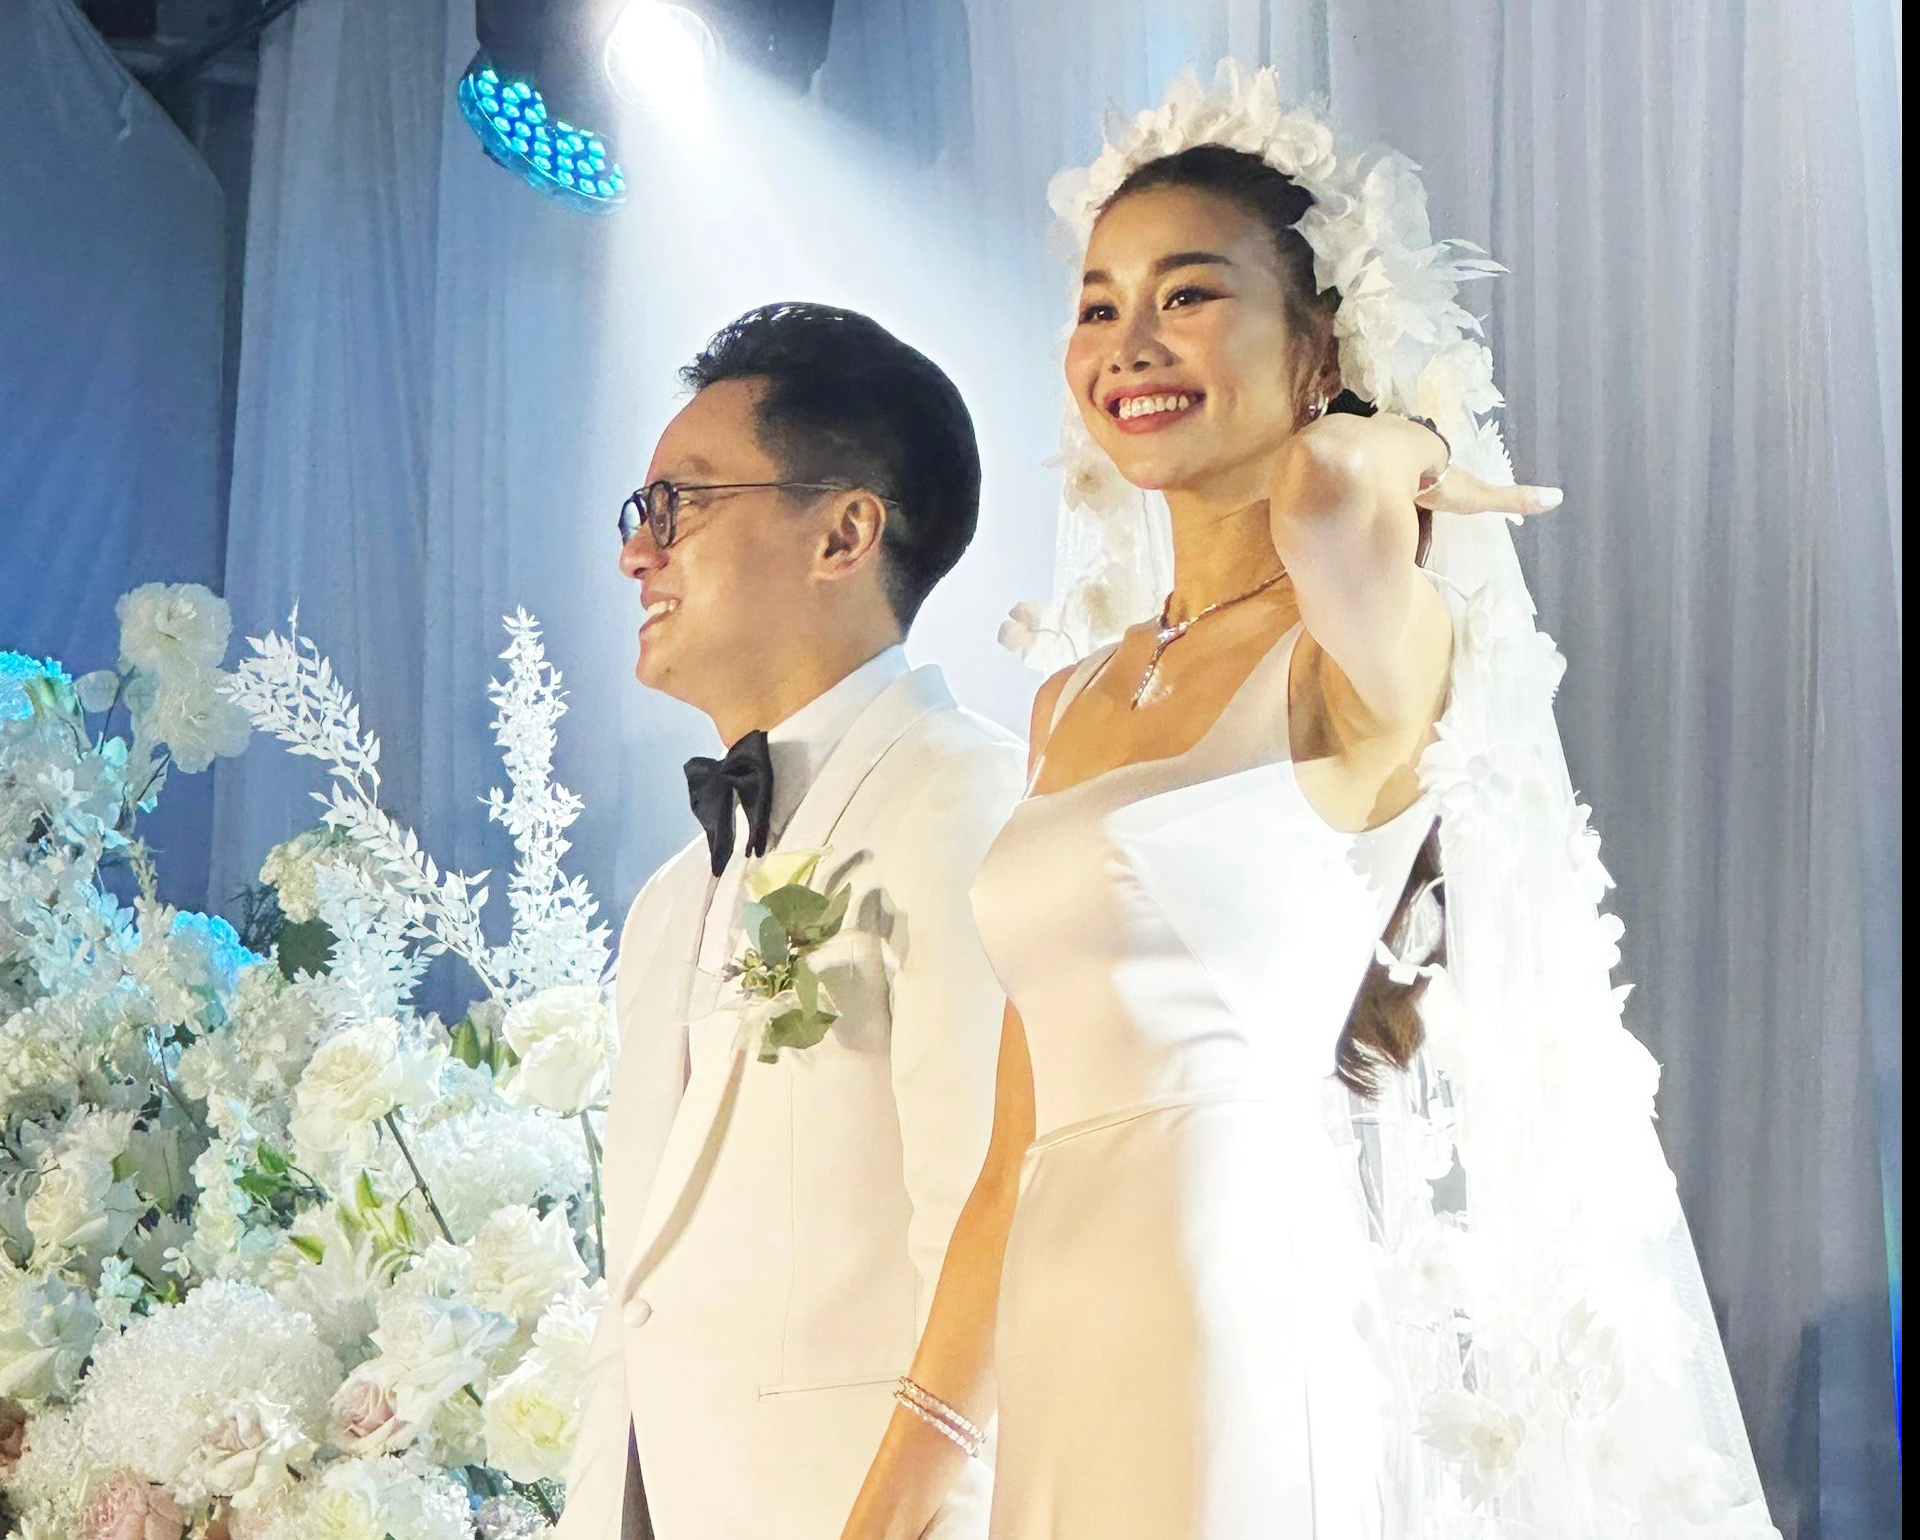 Siêu mẫu Thanh Hằng làm đám cưới với chồng nhạc trưởng - Ảnh 4.